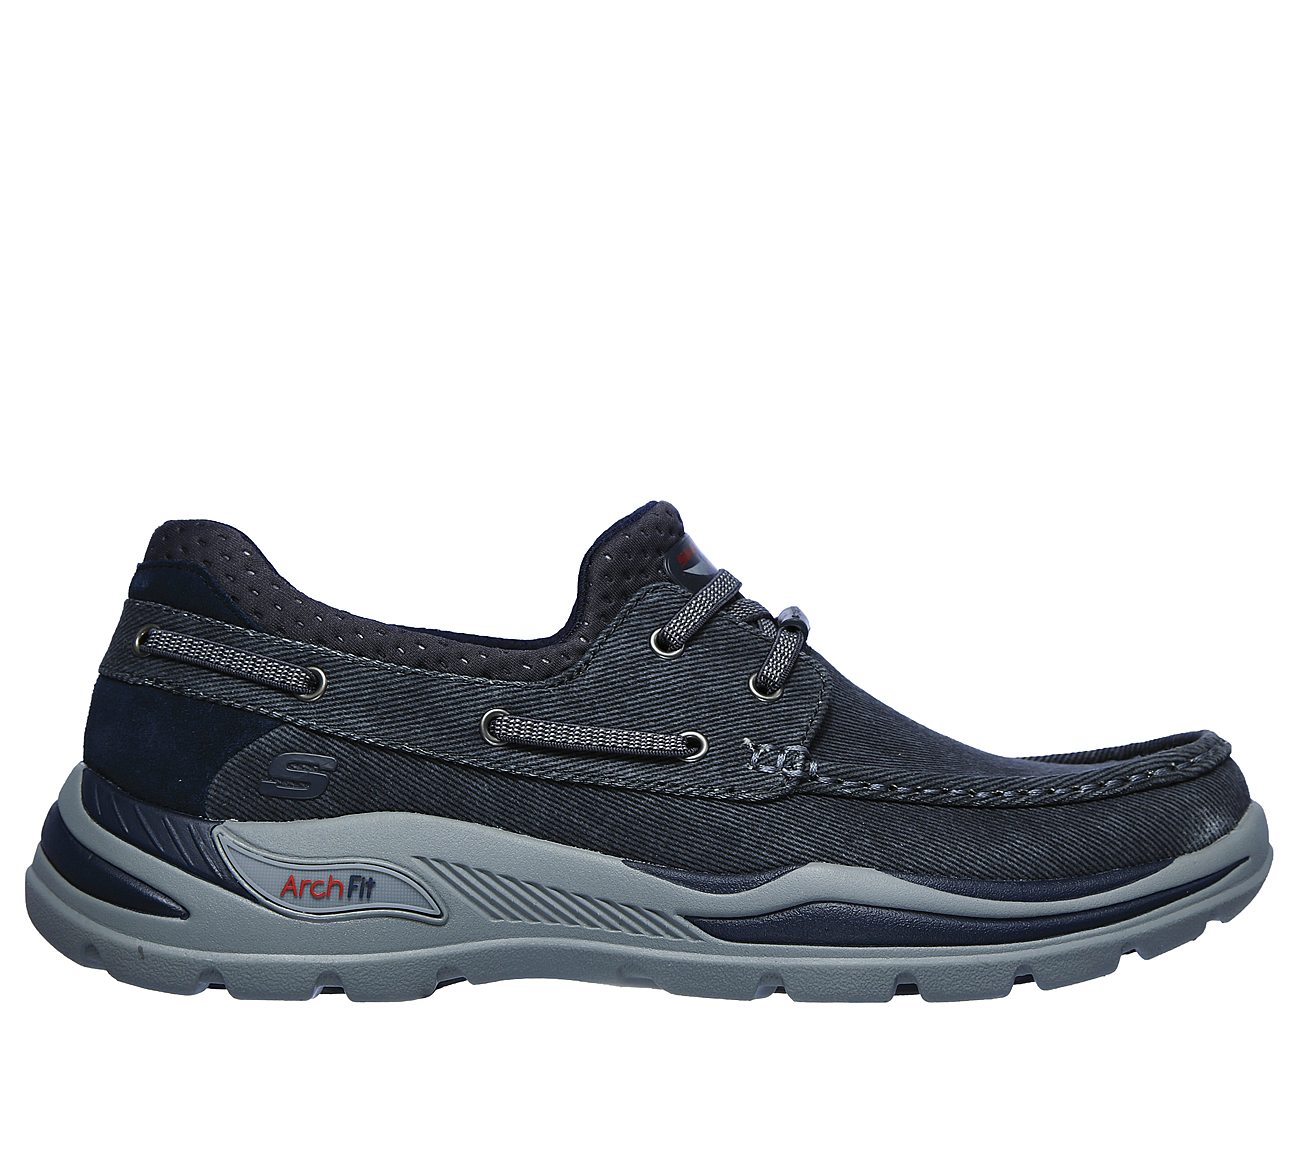 Παπούτσια Skechers. | Επίσημο e-shop Skechers.gr (GR)